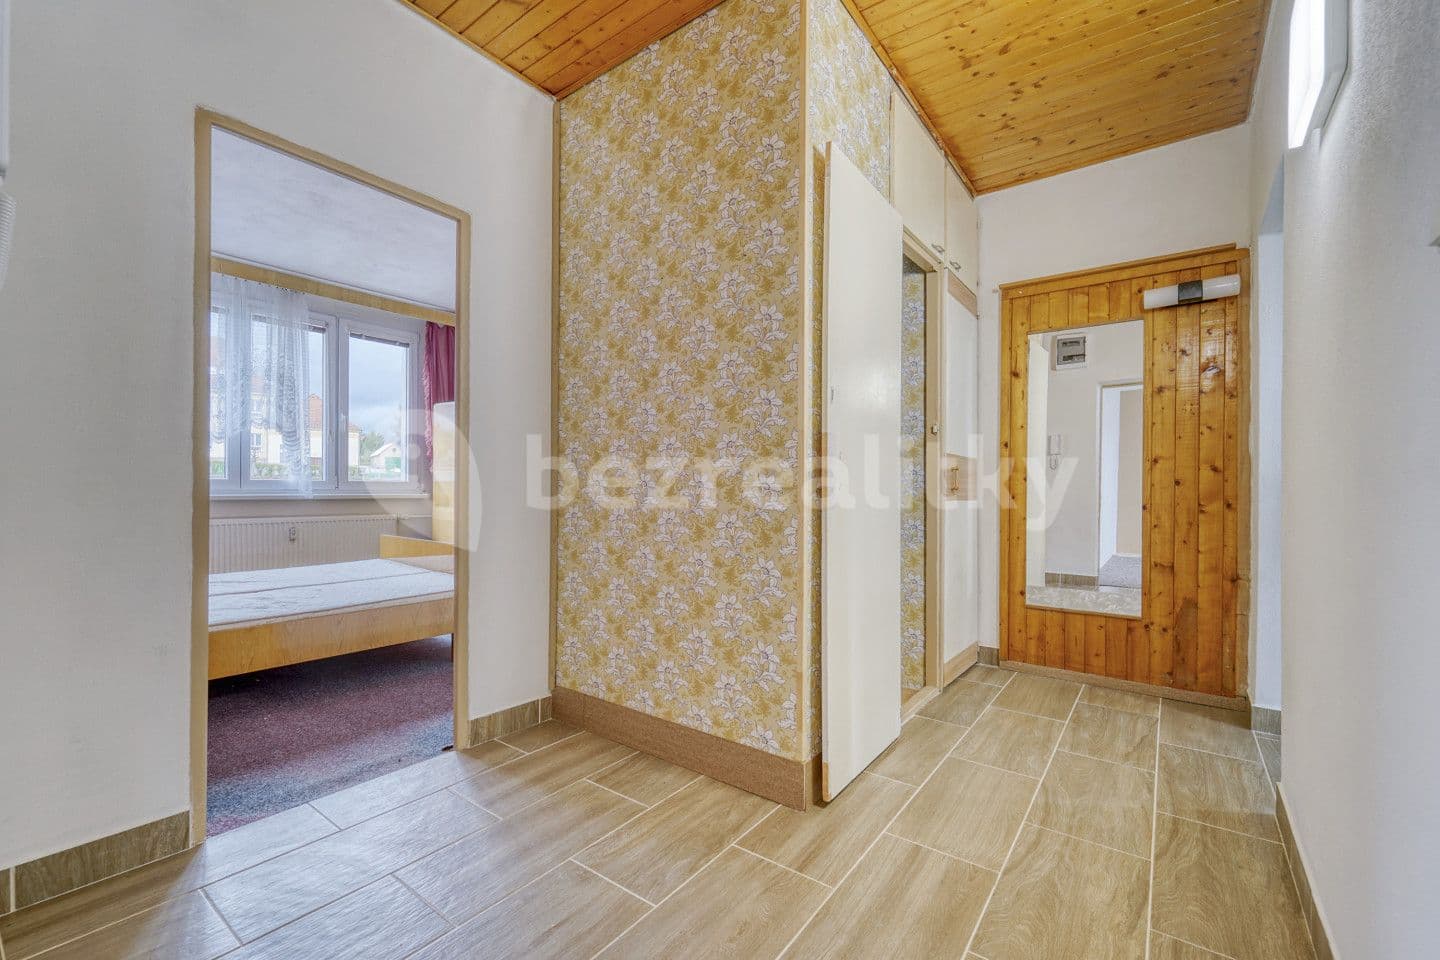 3 bedroom flat for sale, 64 m², Na Sídlišti, Bezdružice, Plzeňský Region